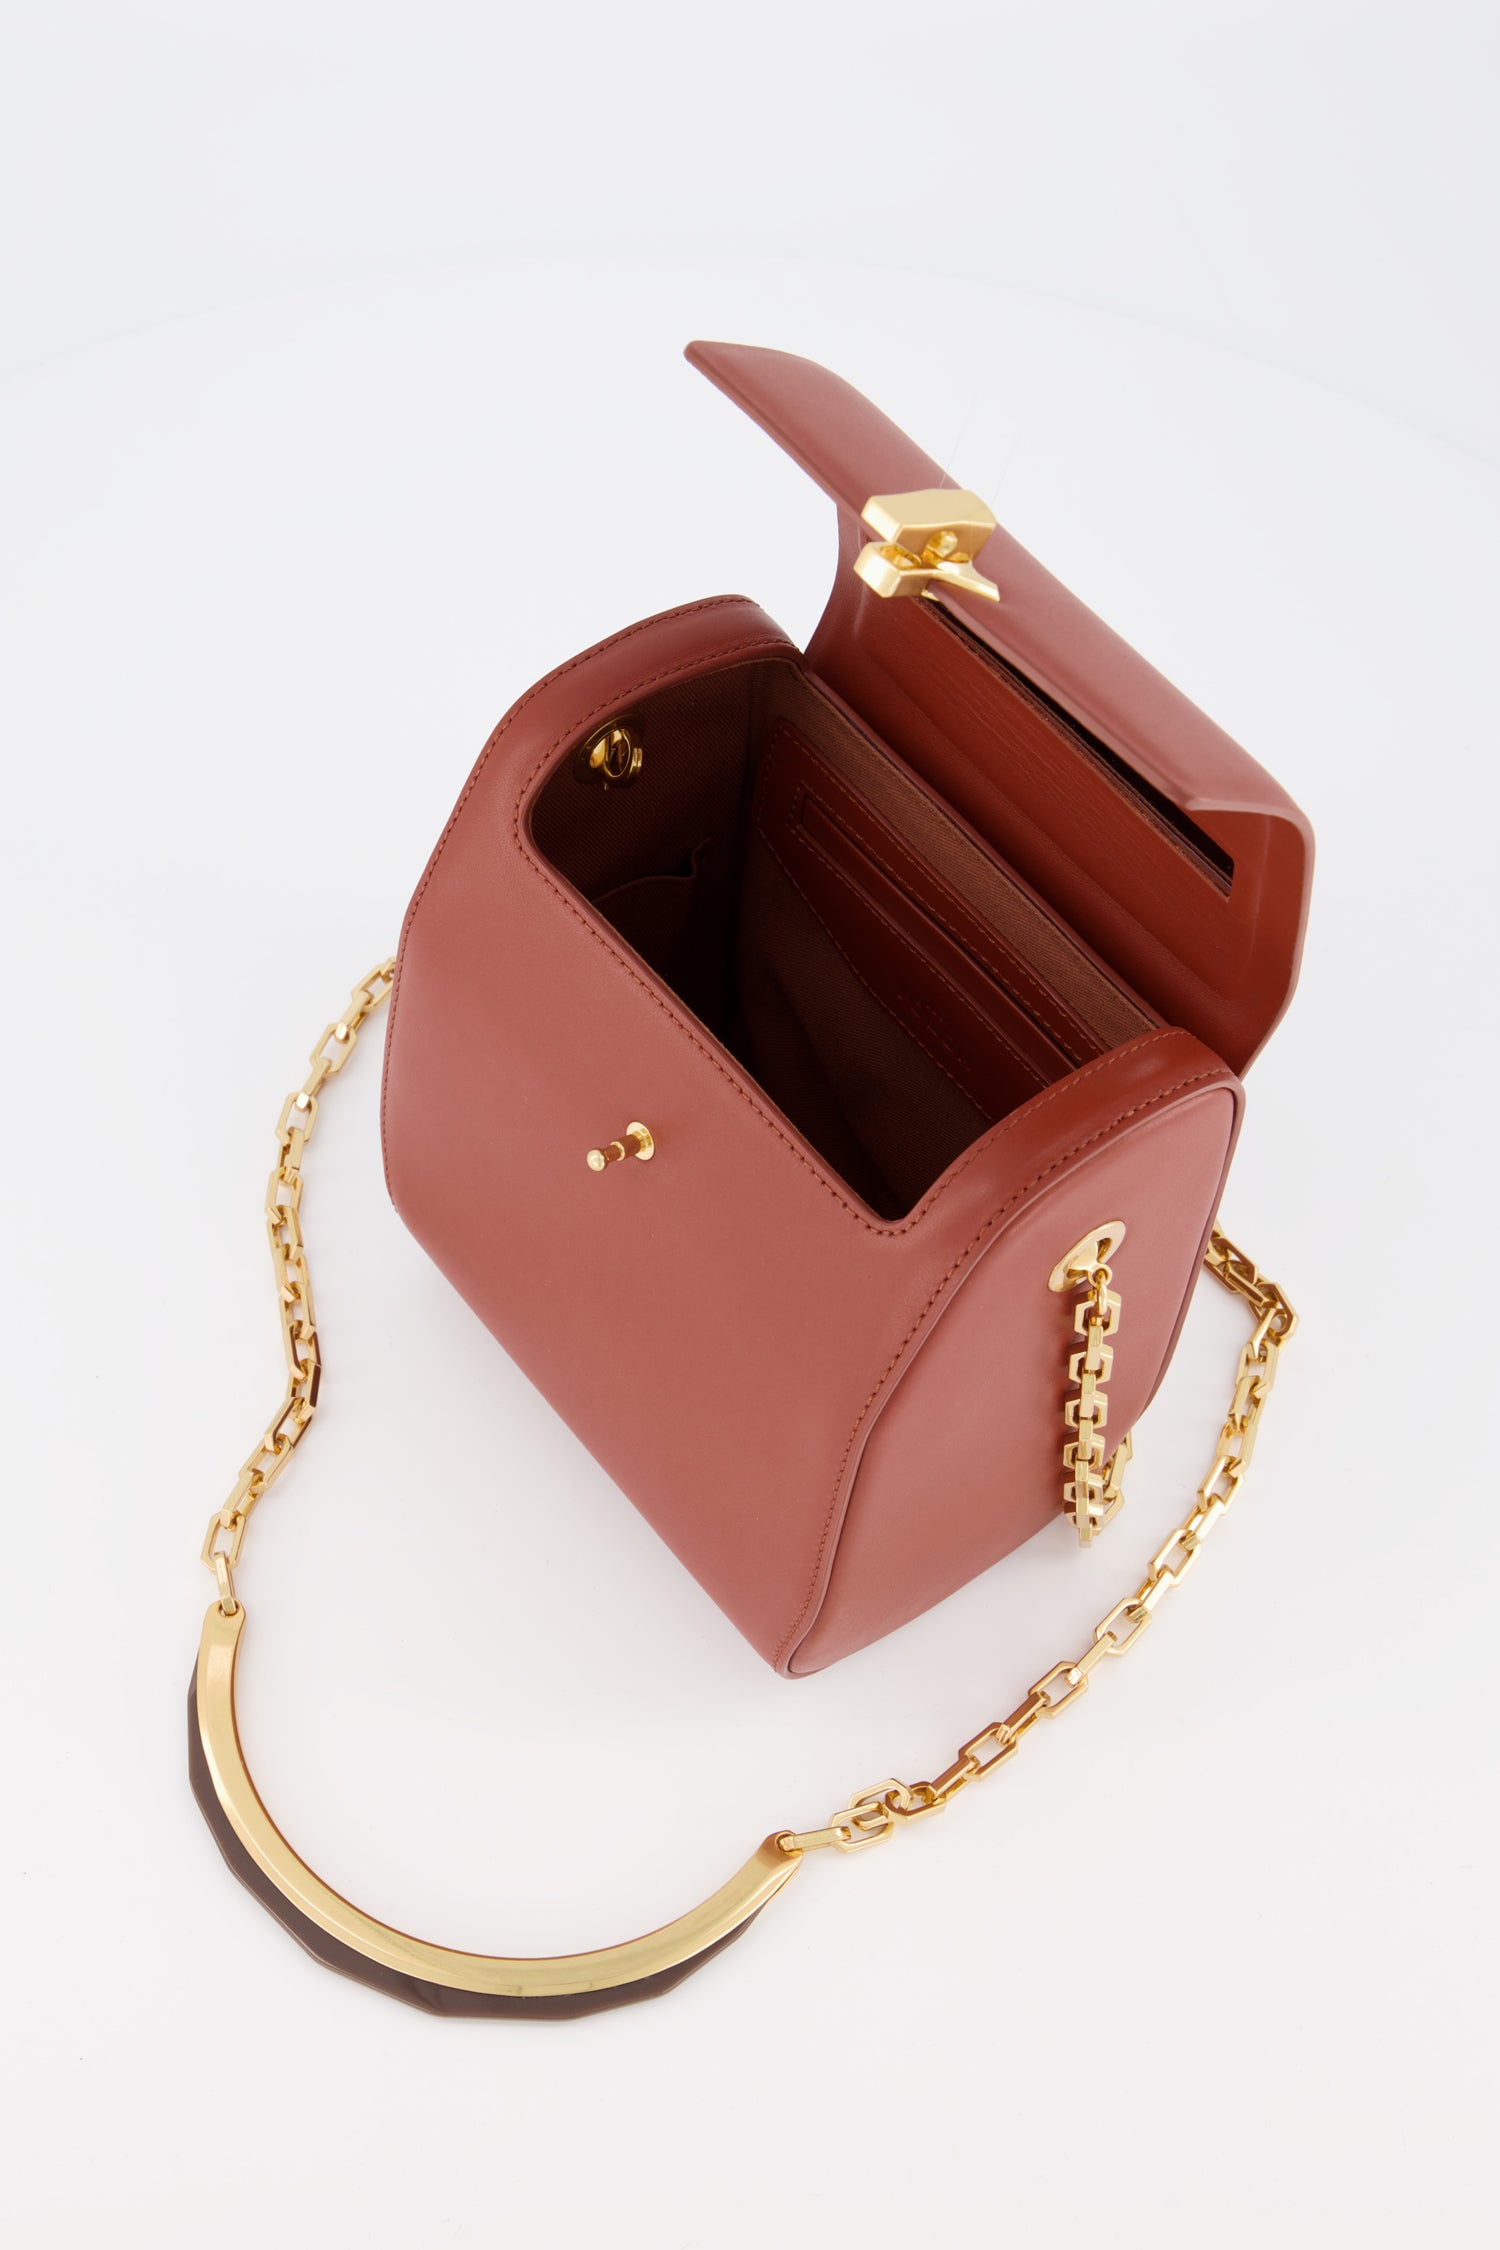 The Volon Tan PO Leather Box Bag